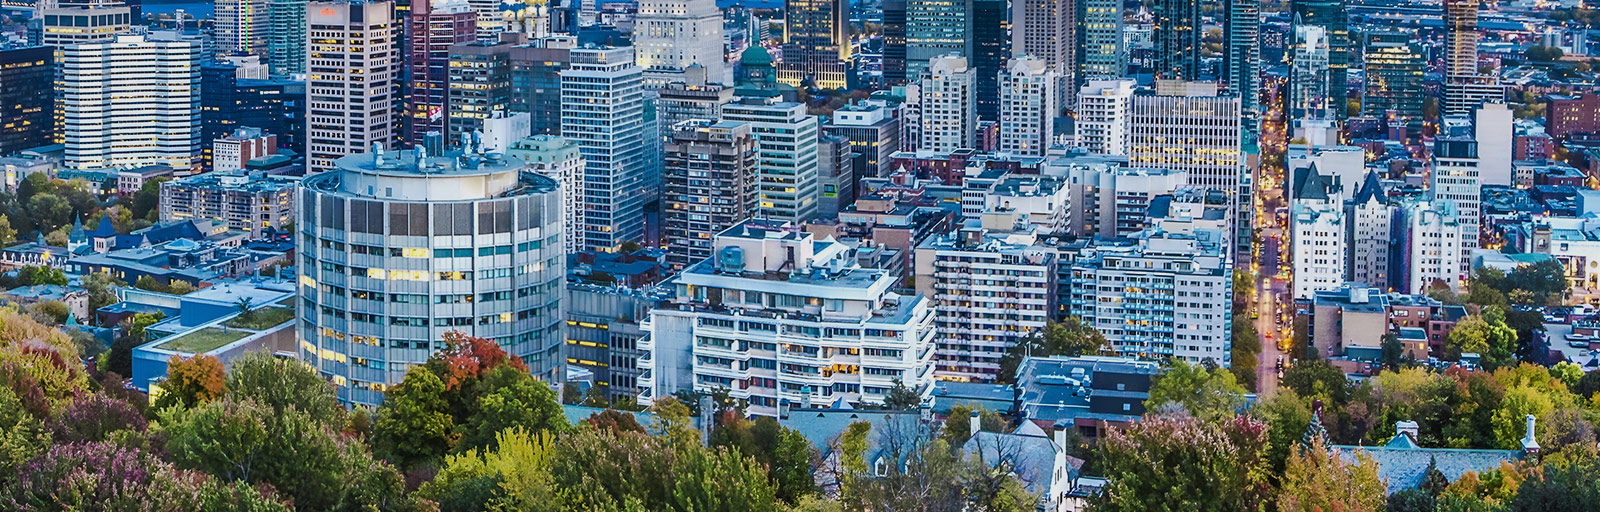 Tunis-Montréal